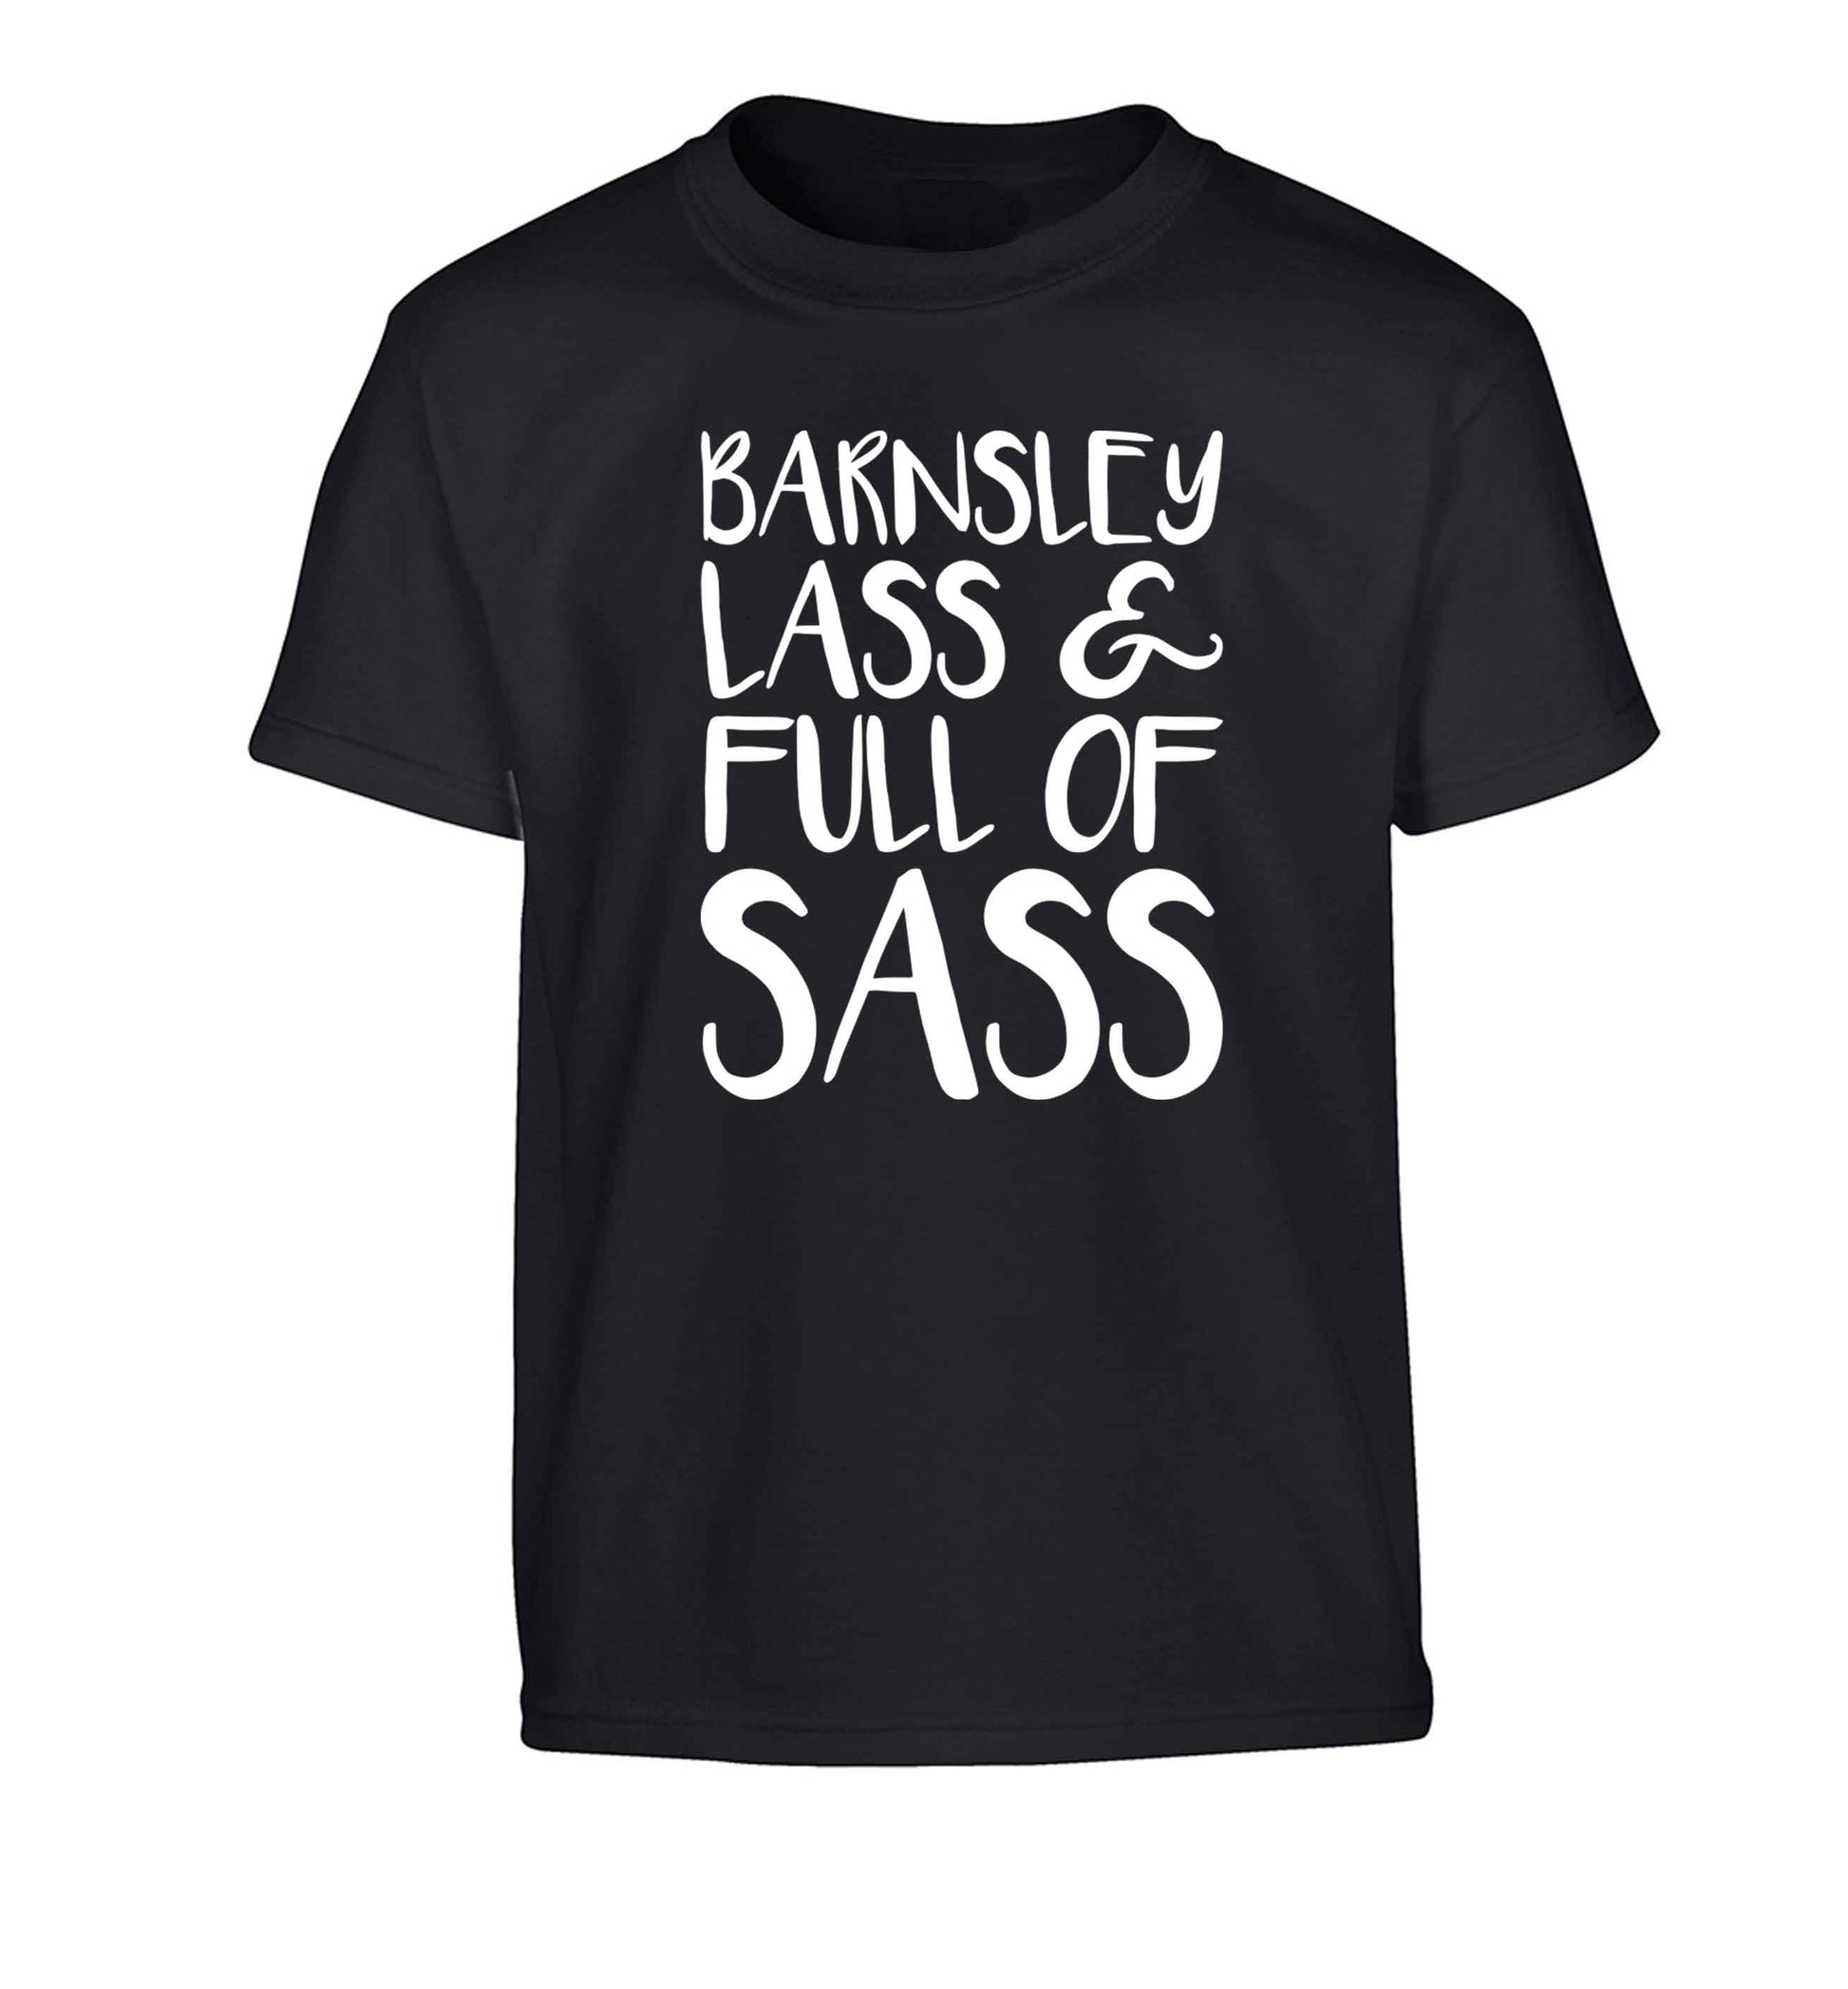 Barnsley lass and full of sass Children's black Tshirt 12-13 Years